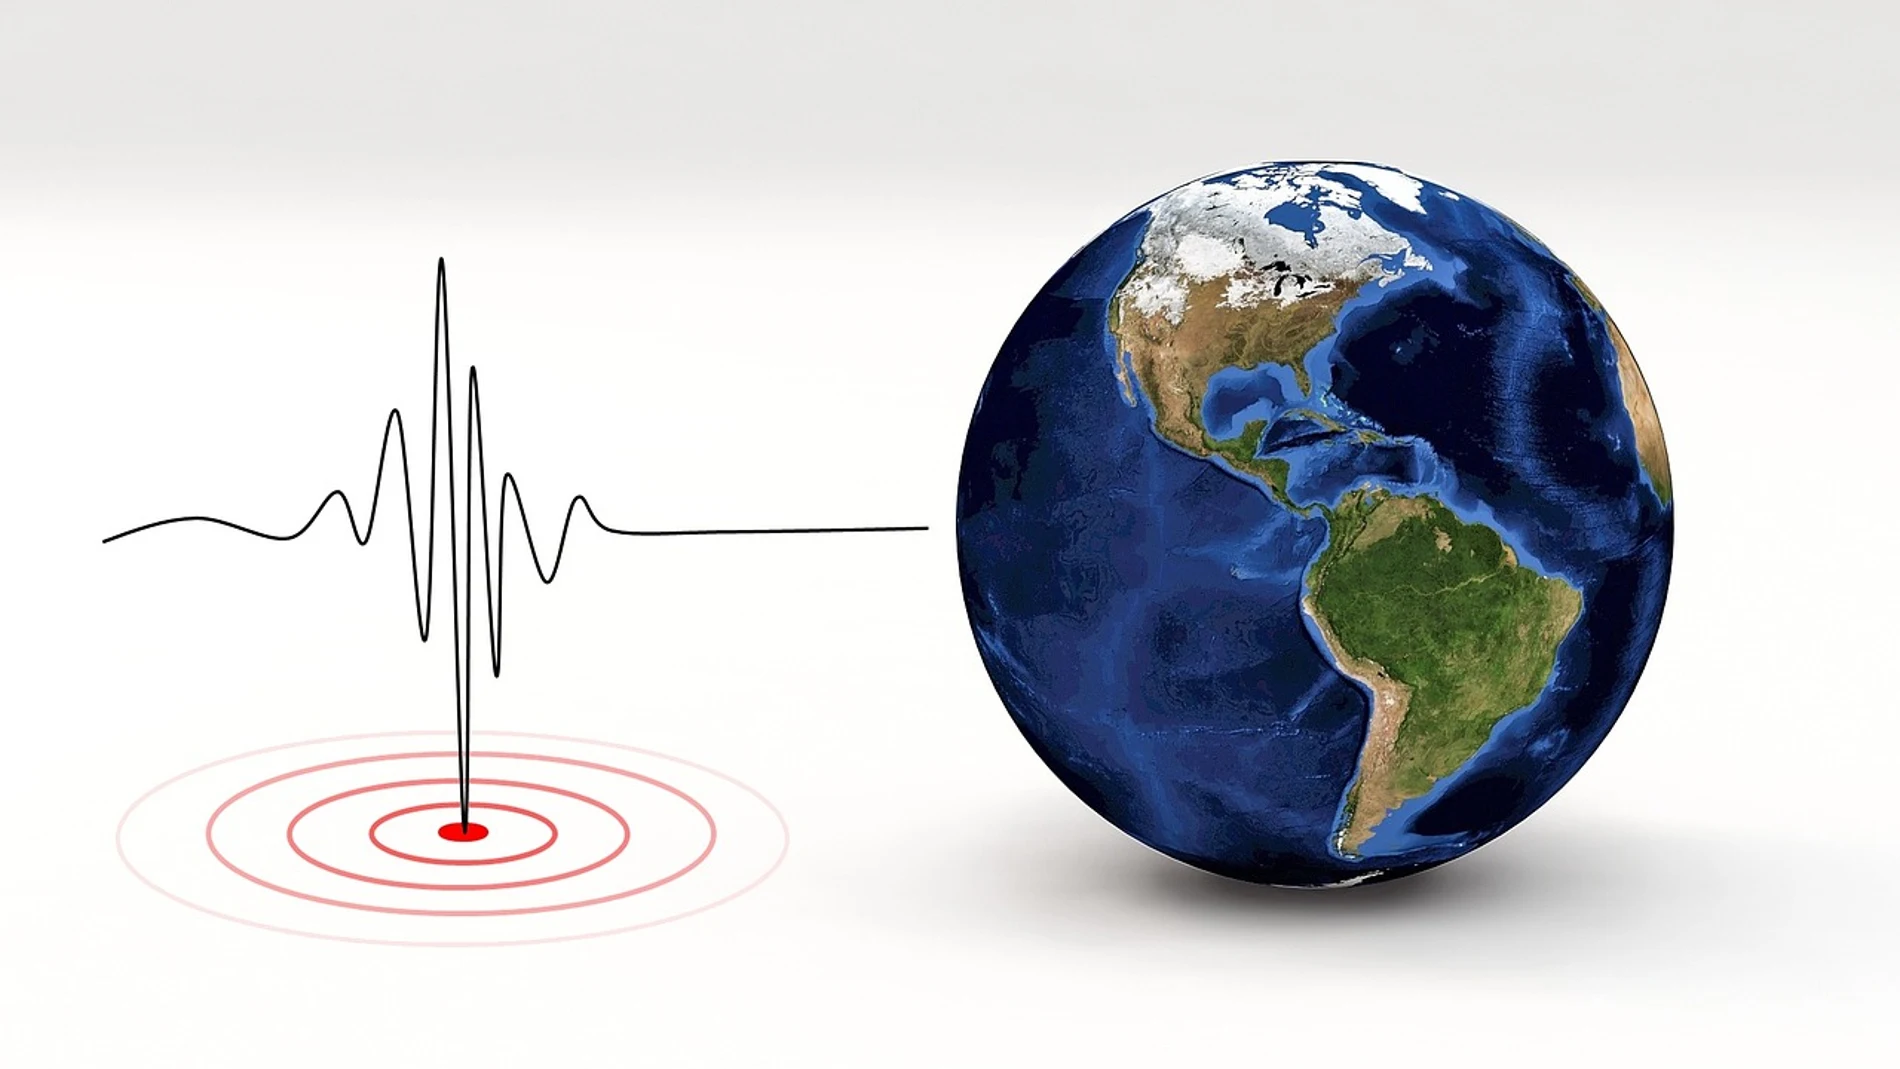 Como mide la intensidad de un sismo